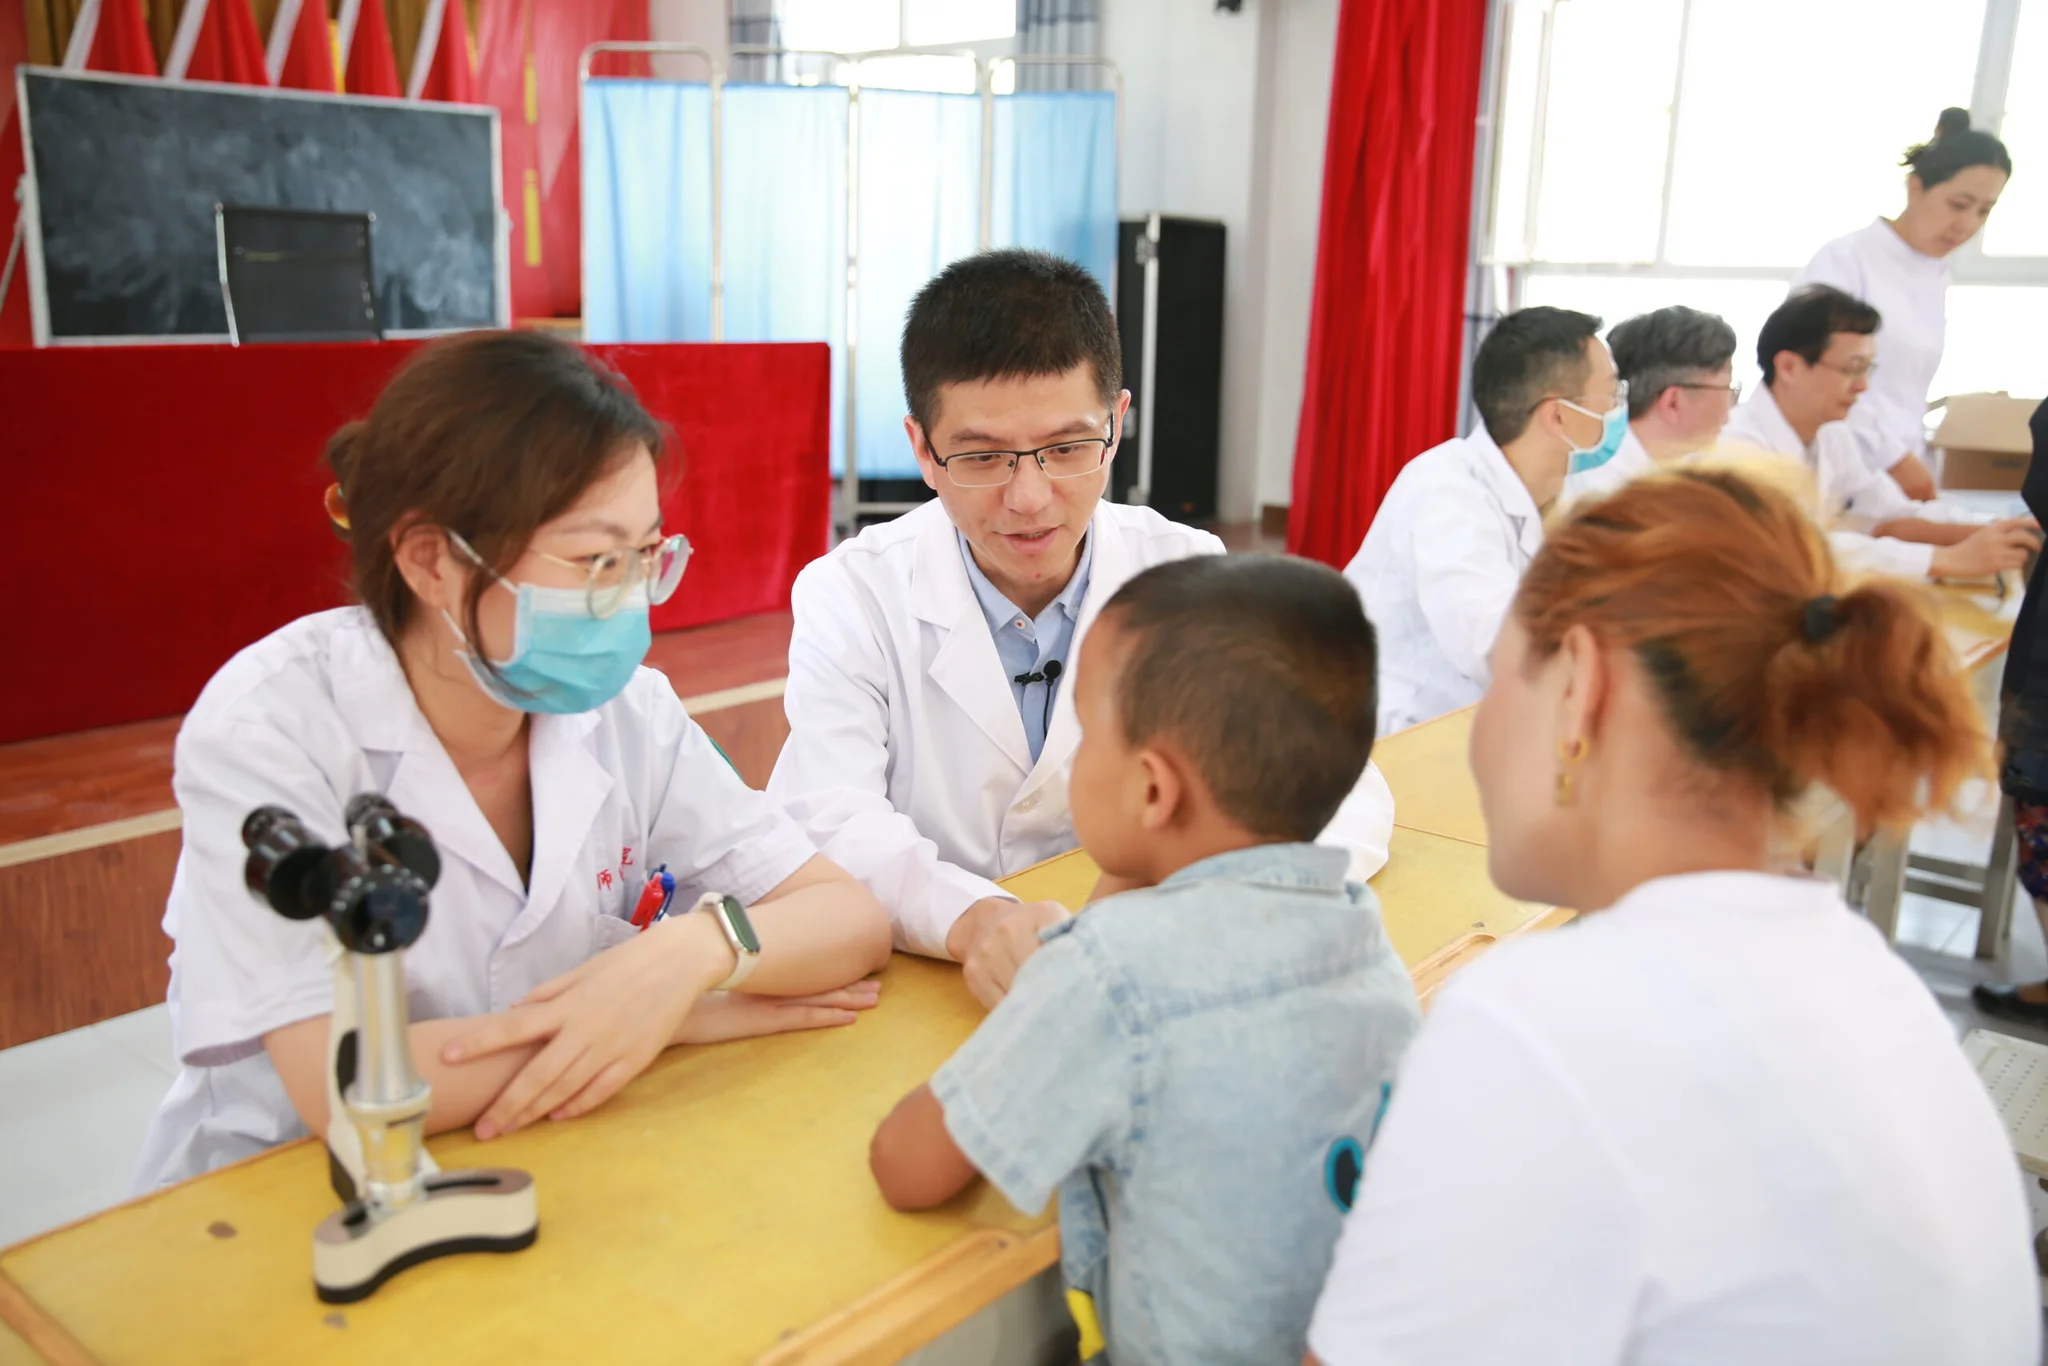 จีนมุ่งพัฒนา 'บุคลากรการแพทย์รากหญ้า' ผ่านโครงการฝึกอบรม